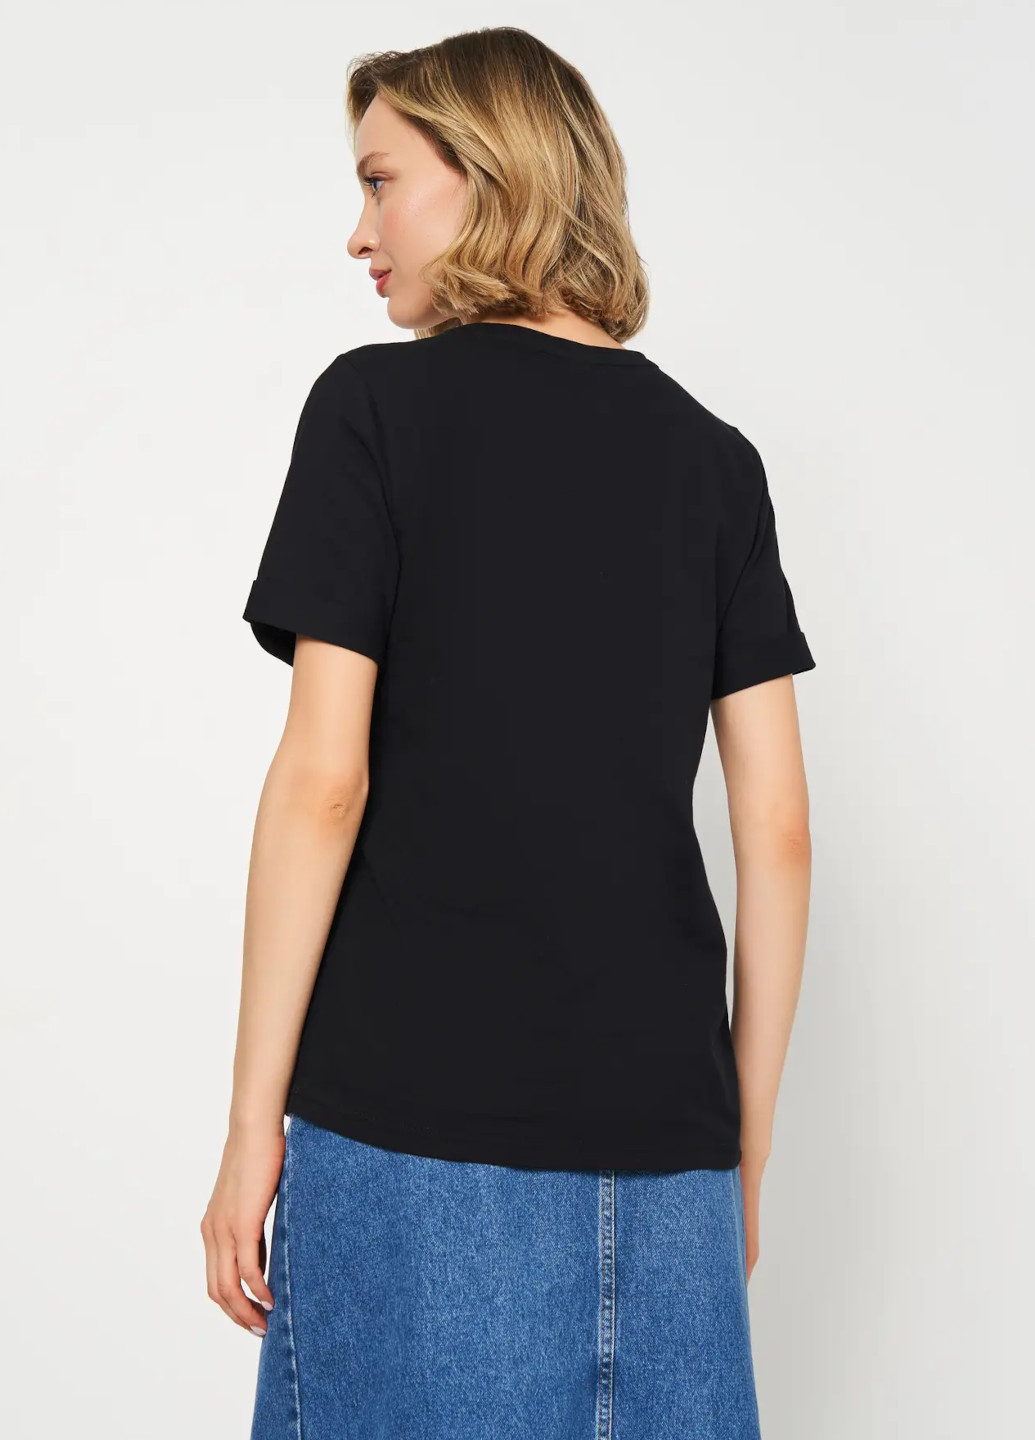 Чорна всесезон футболка жіноча з коротким рукавом Роза